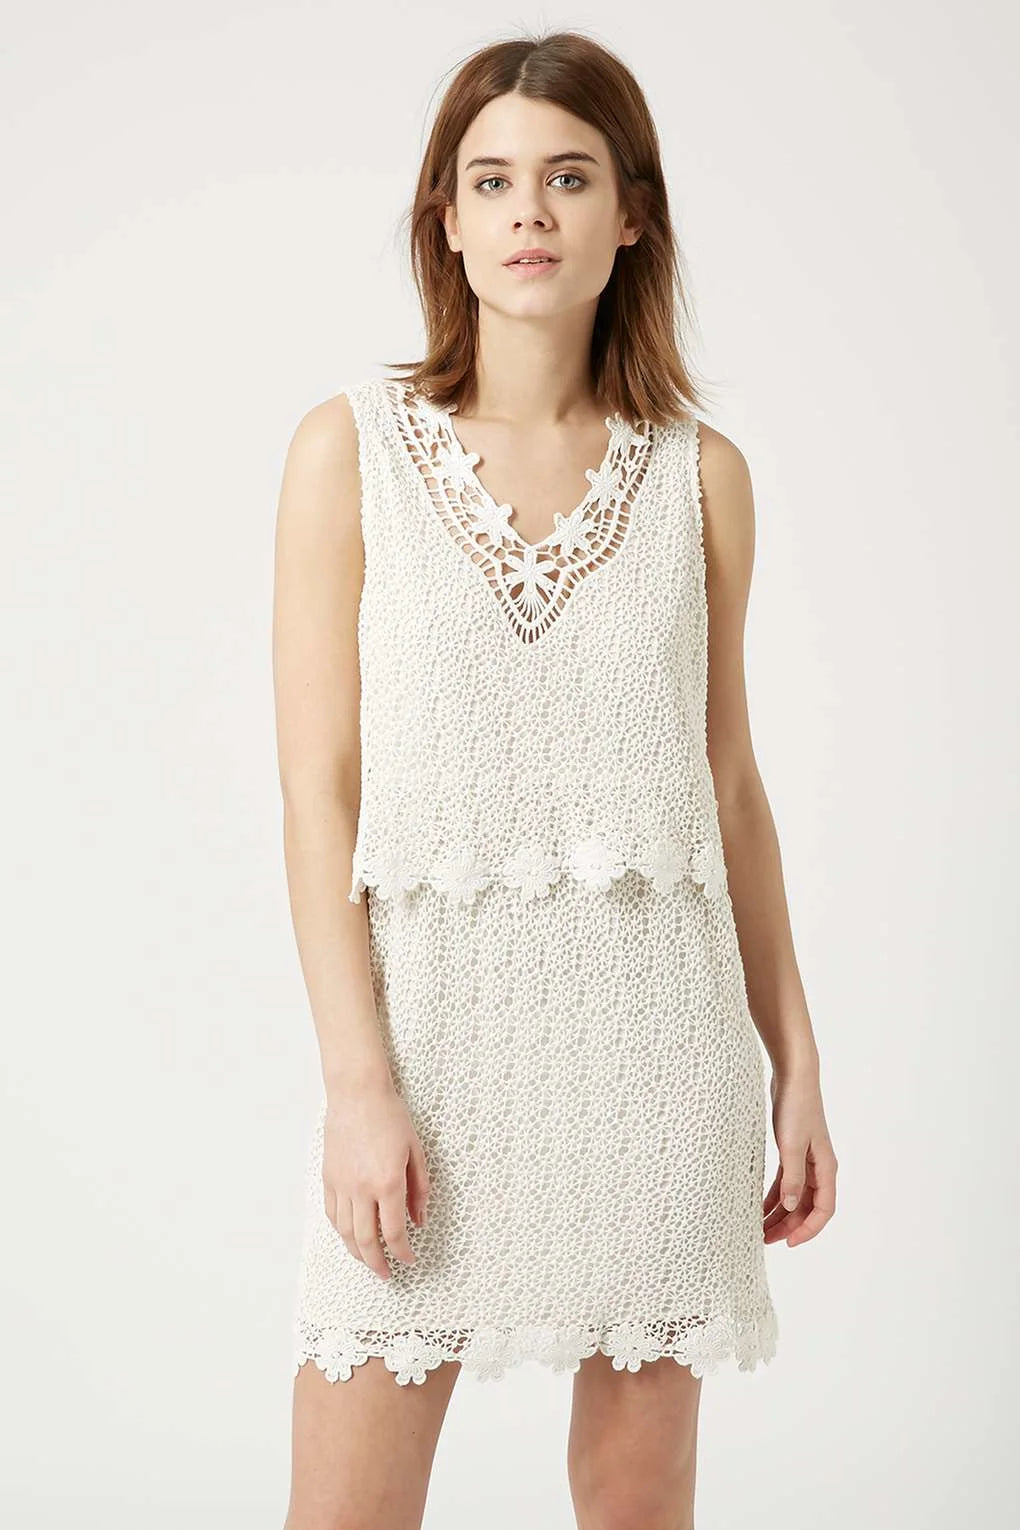 Topshop Sleeveless Crochet Layer Dress